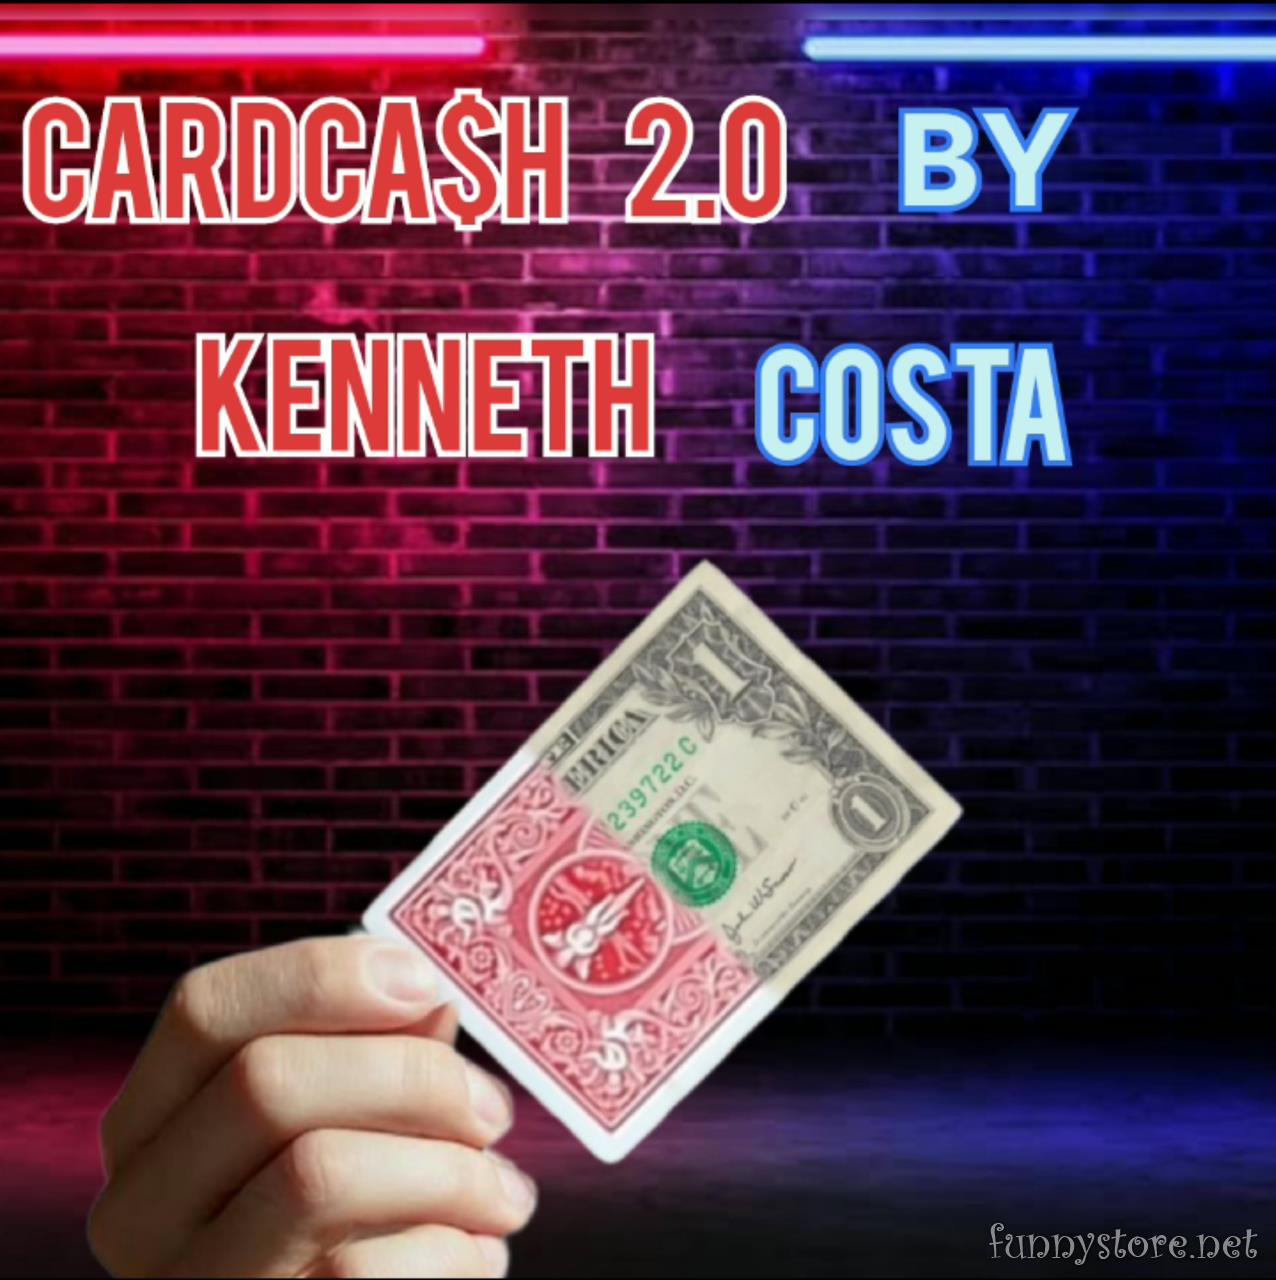 Kenneth Costa - Card Cash Transpo 2.0